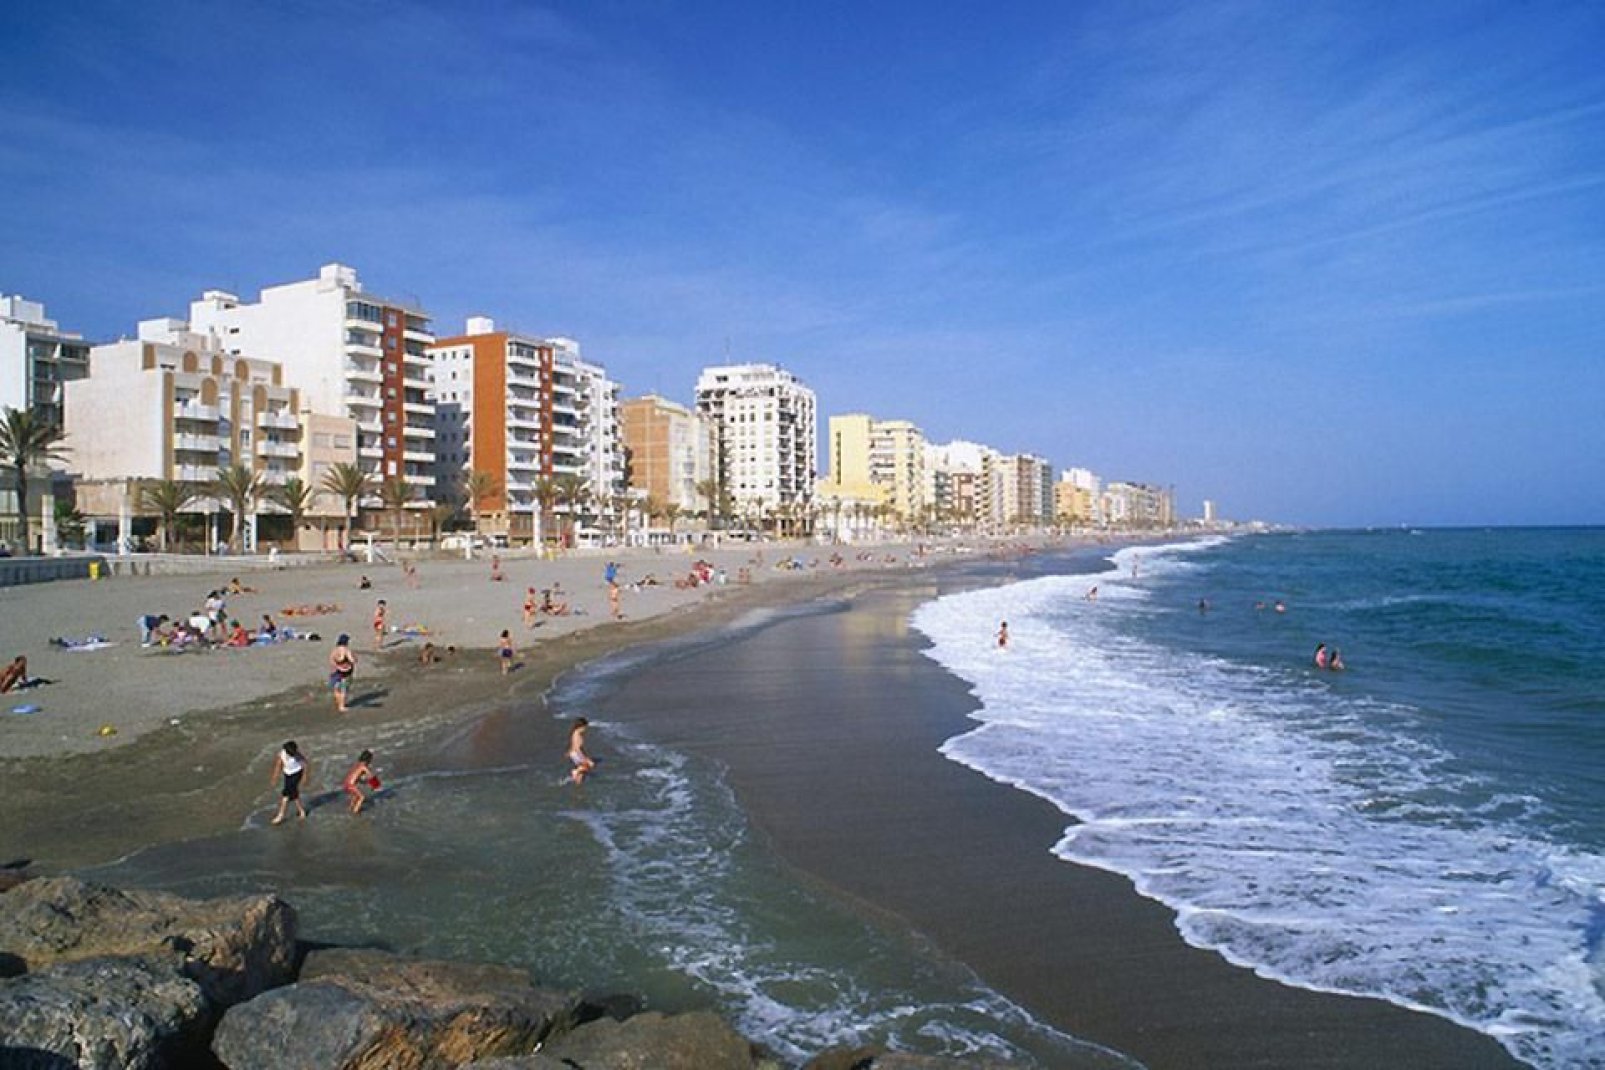 Almeria est réputée pour ses plages de sable fin. On y trouve également la plus grande plage naturiste d'Europe.